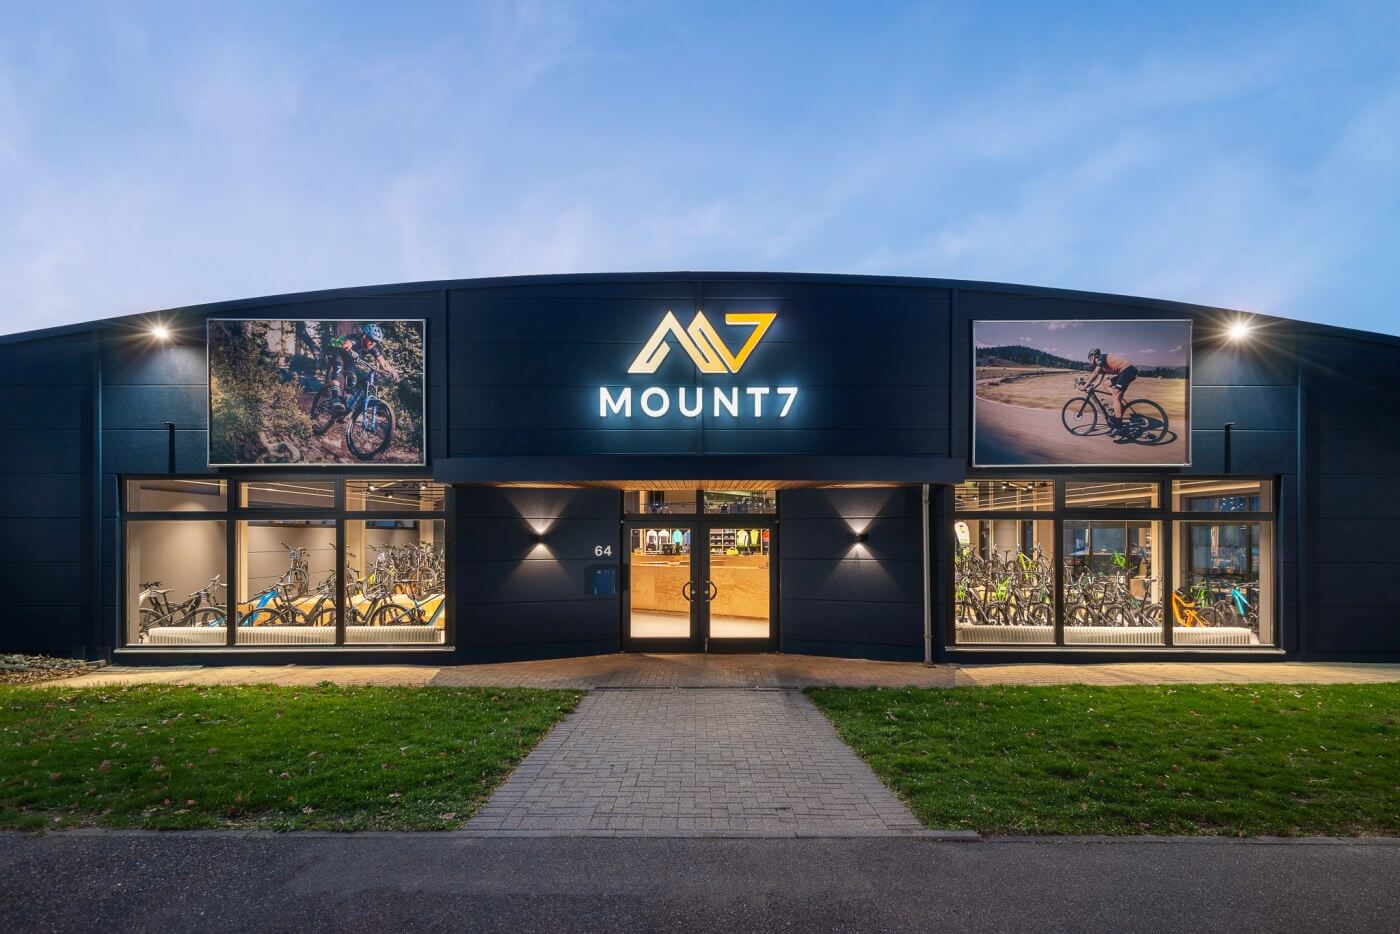 Mount7 - Dein Fahrradladen in Freiburg